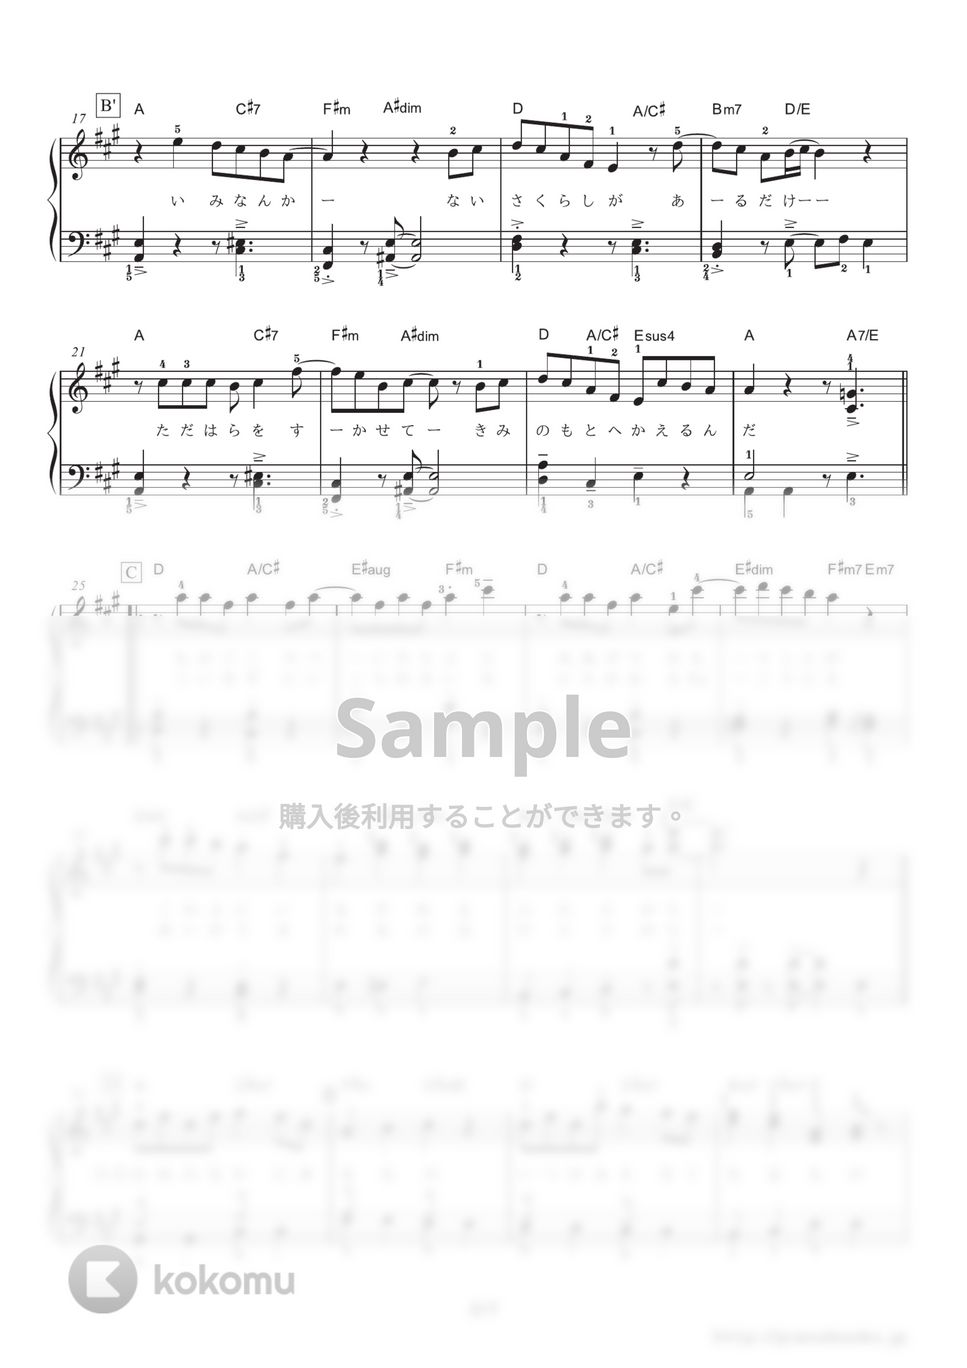 星野源 - 恋 (ドラマ『逃げるは恥だが役に立つ』主題歌。) by ピアノの本棚